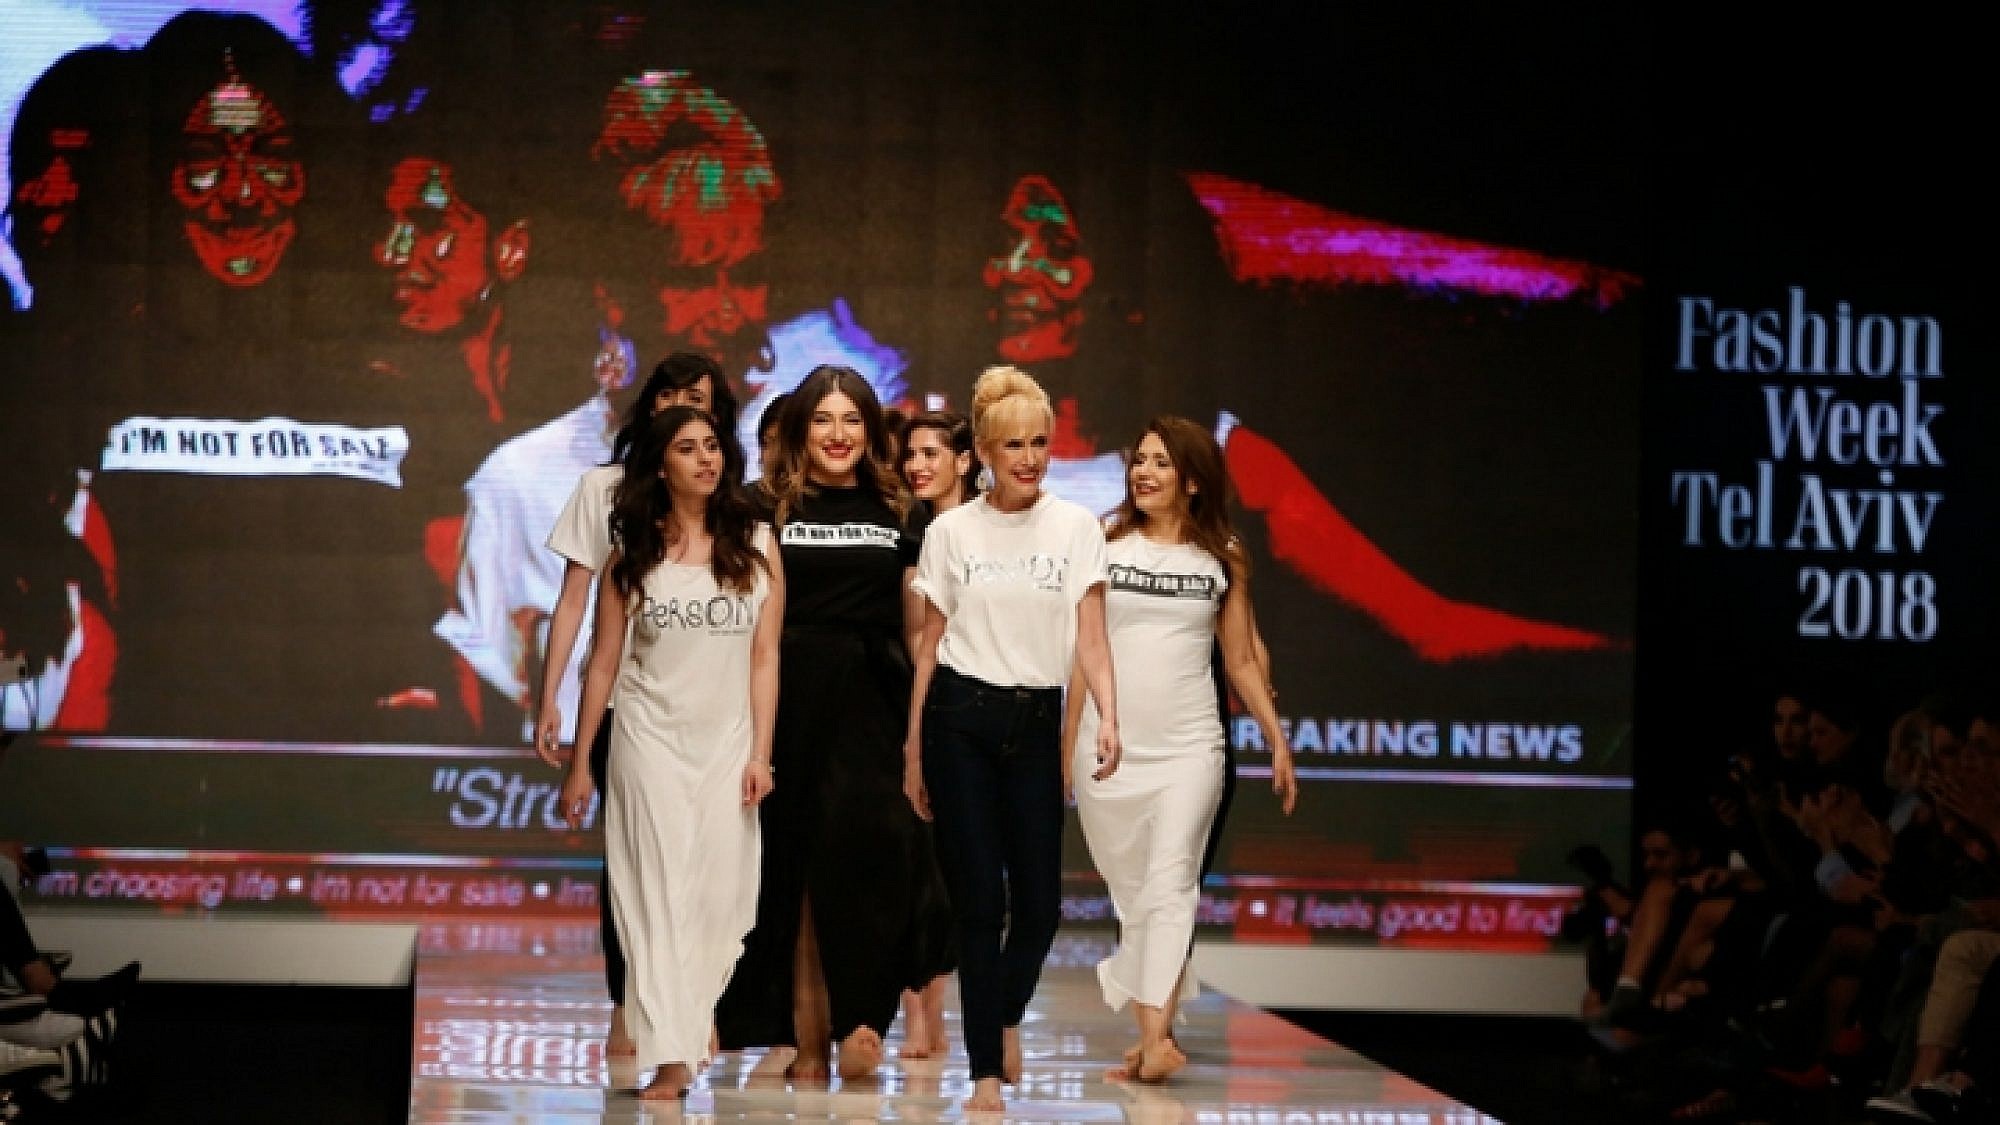 כוכבות הסדרה "הרמון" בתצוגת "הופכות את היוצרות", שבוע האופנה תל אביב 2018 | צילום: אדריאן סבל